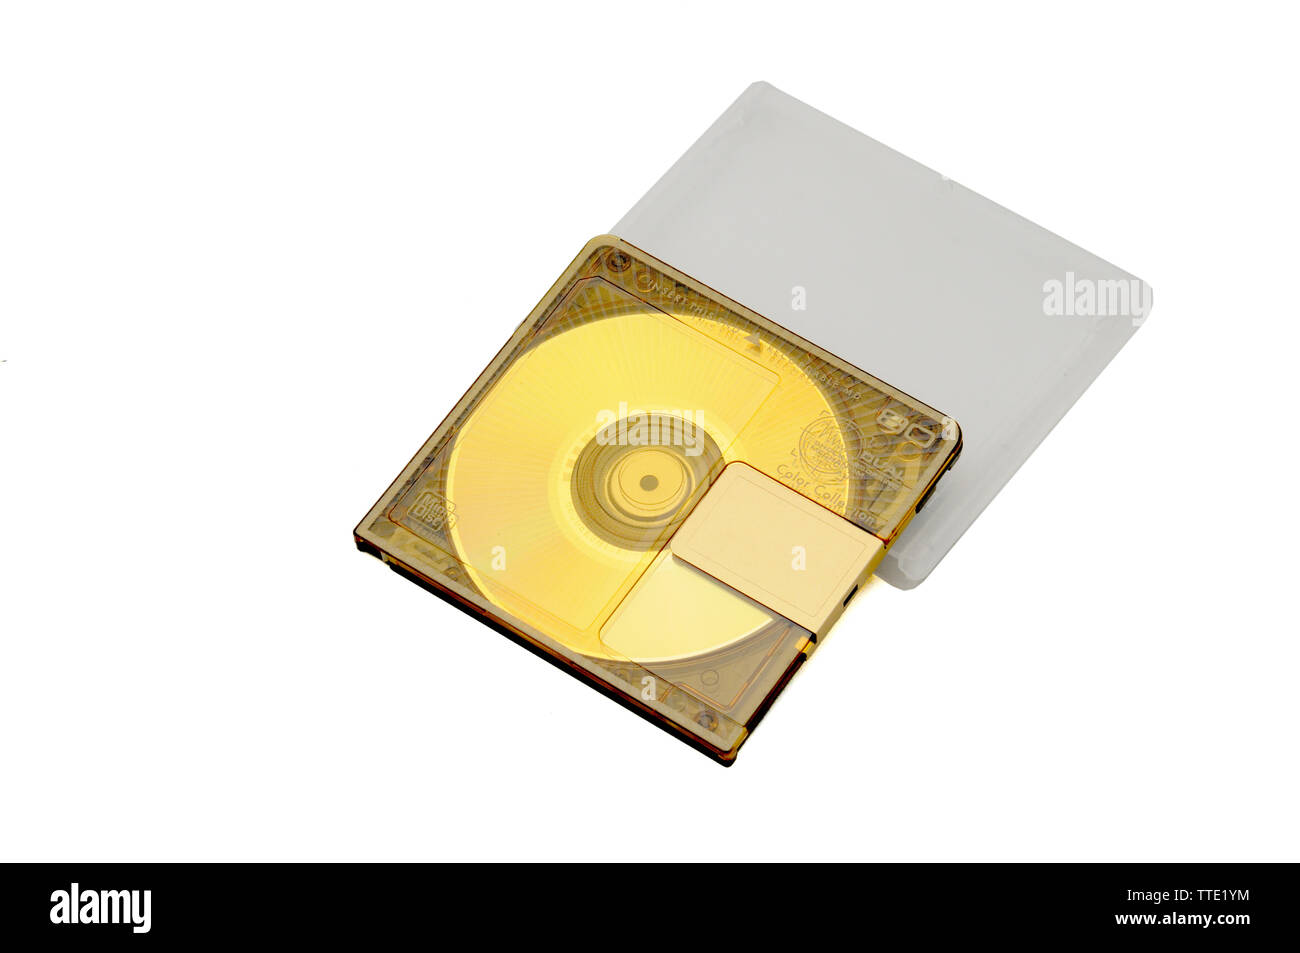 Kompakte wiederbeschreibbare Mini Disc-MD-Recorder für digitale Aufnahmen freigegeben in den 90er Jahren auf einem weißen Hintergrund. Stockfoto